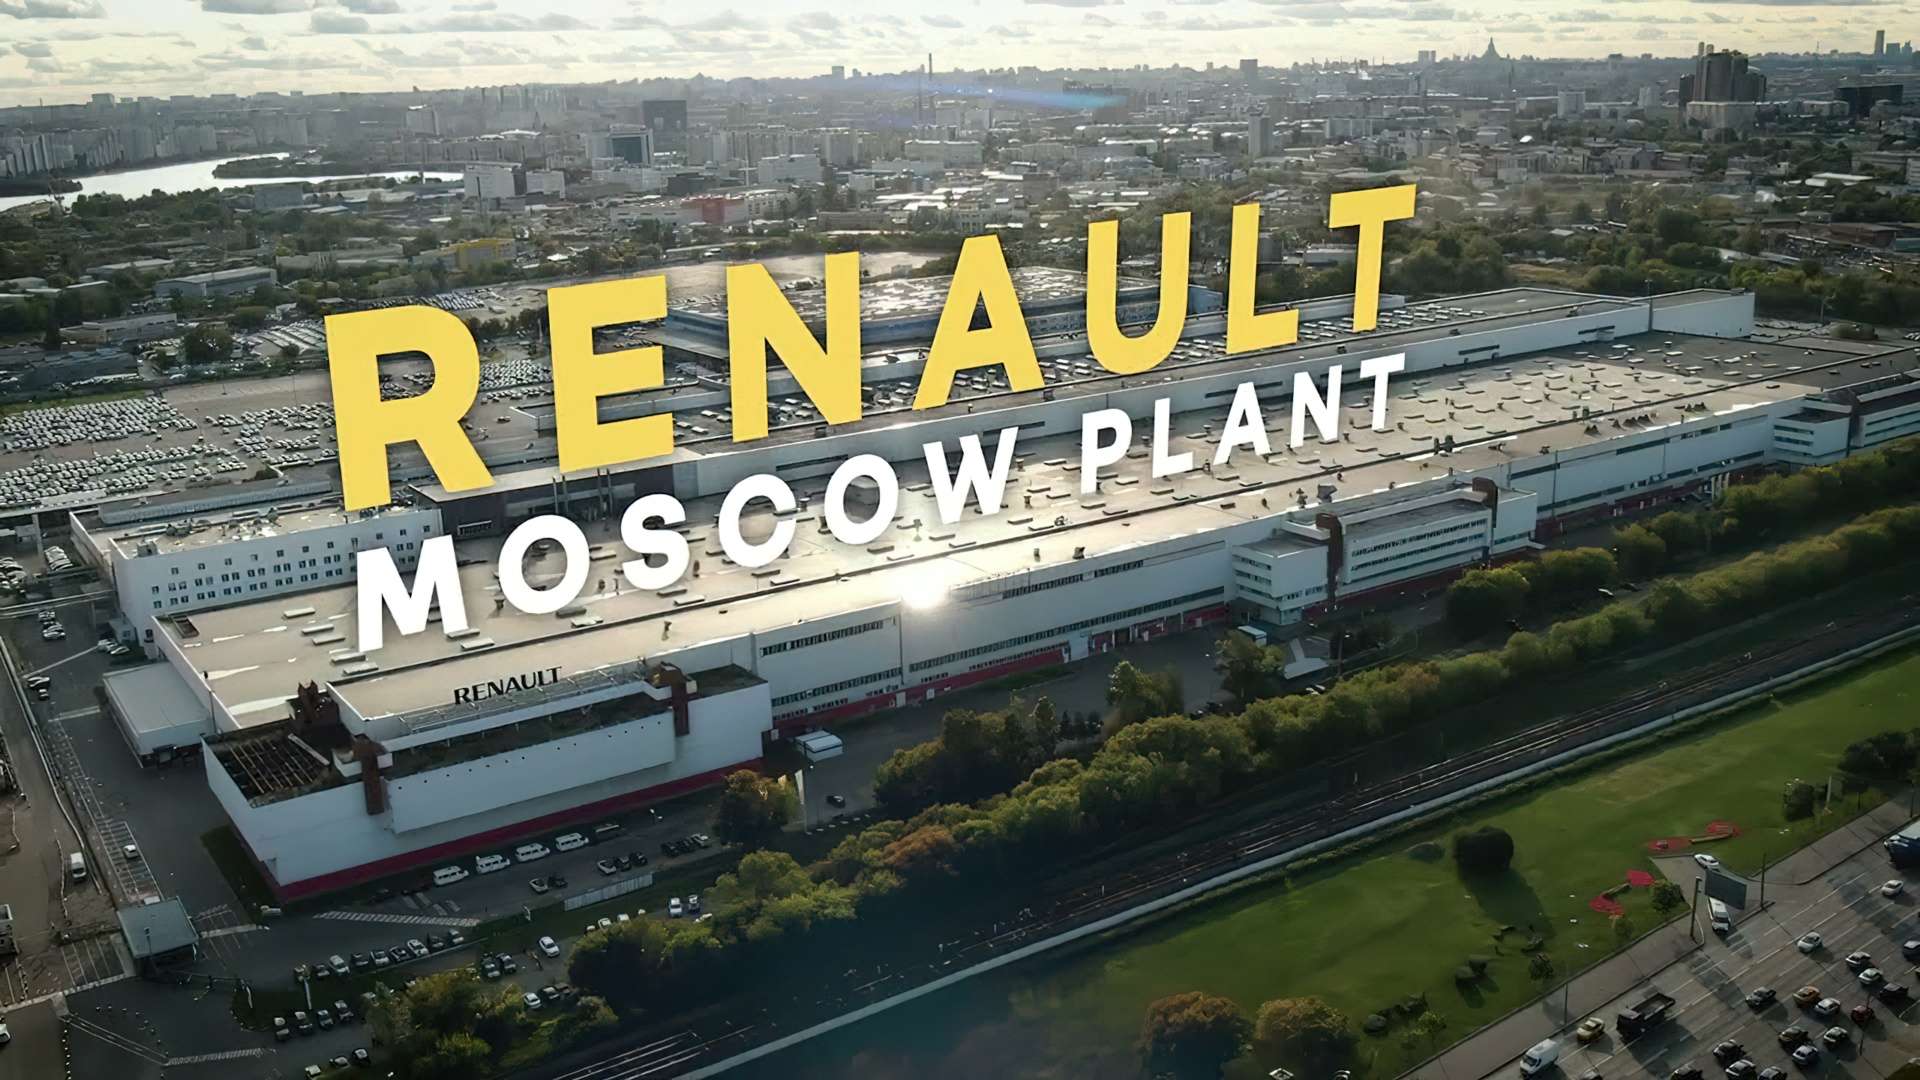 Renault Rosja zostaje znacjonalizowane przez rosyjski rząd